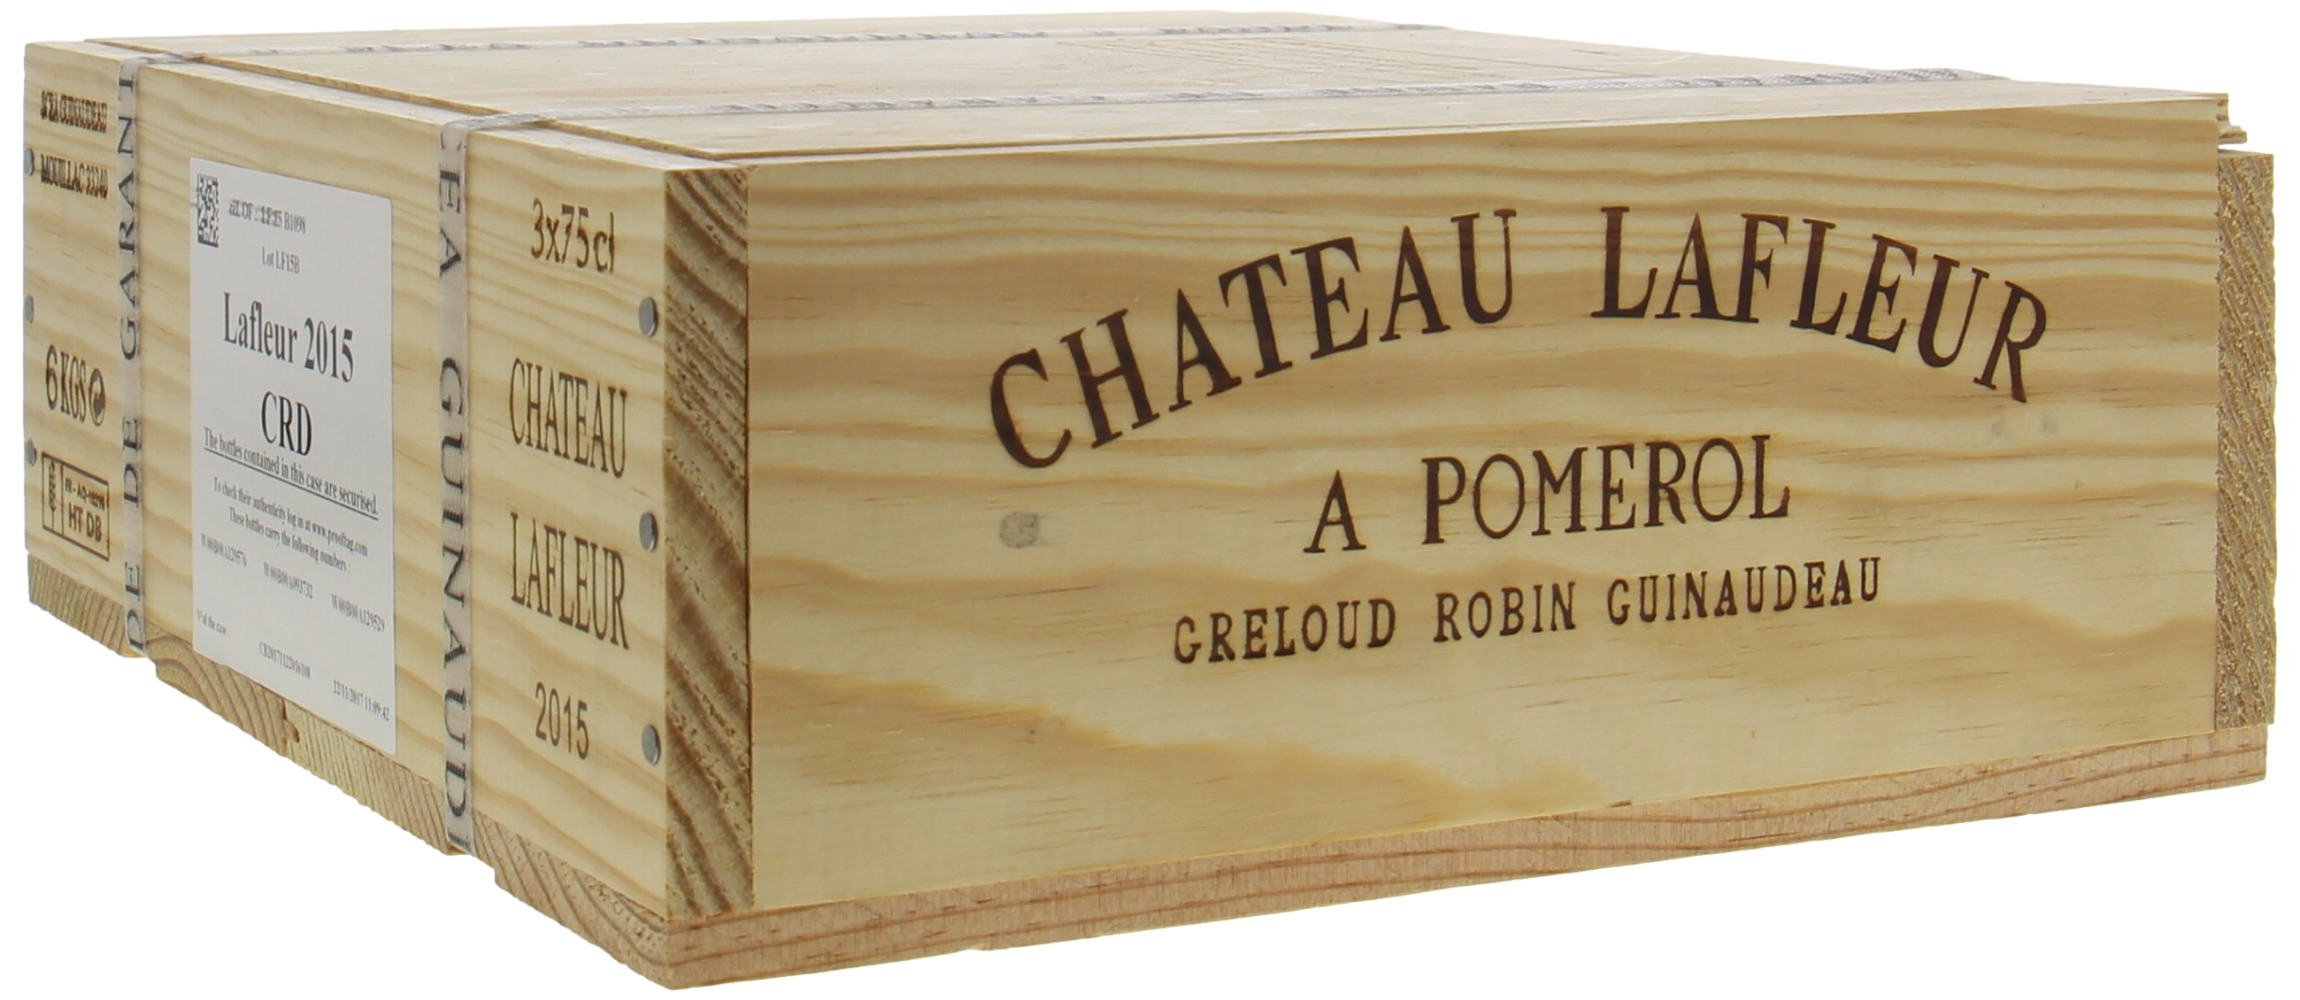 Chateau Lafleur - Chateau Lafleur 2015 Perfect